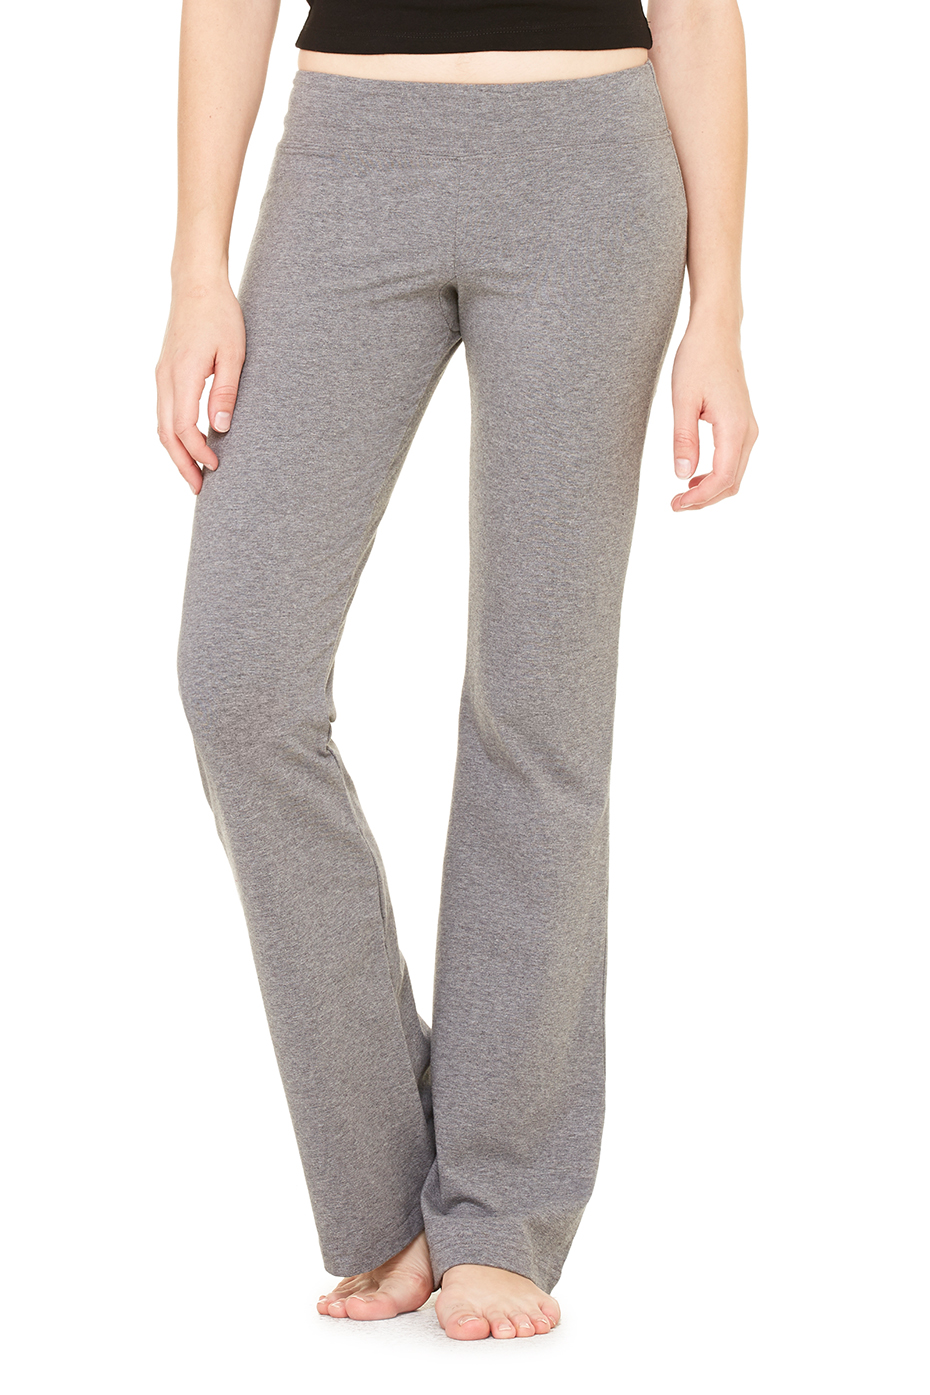 JDEFEG Soft Yoga Pants for Women Cotton Women Custom Soild Custom